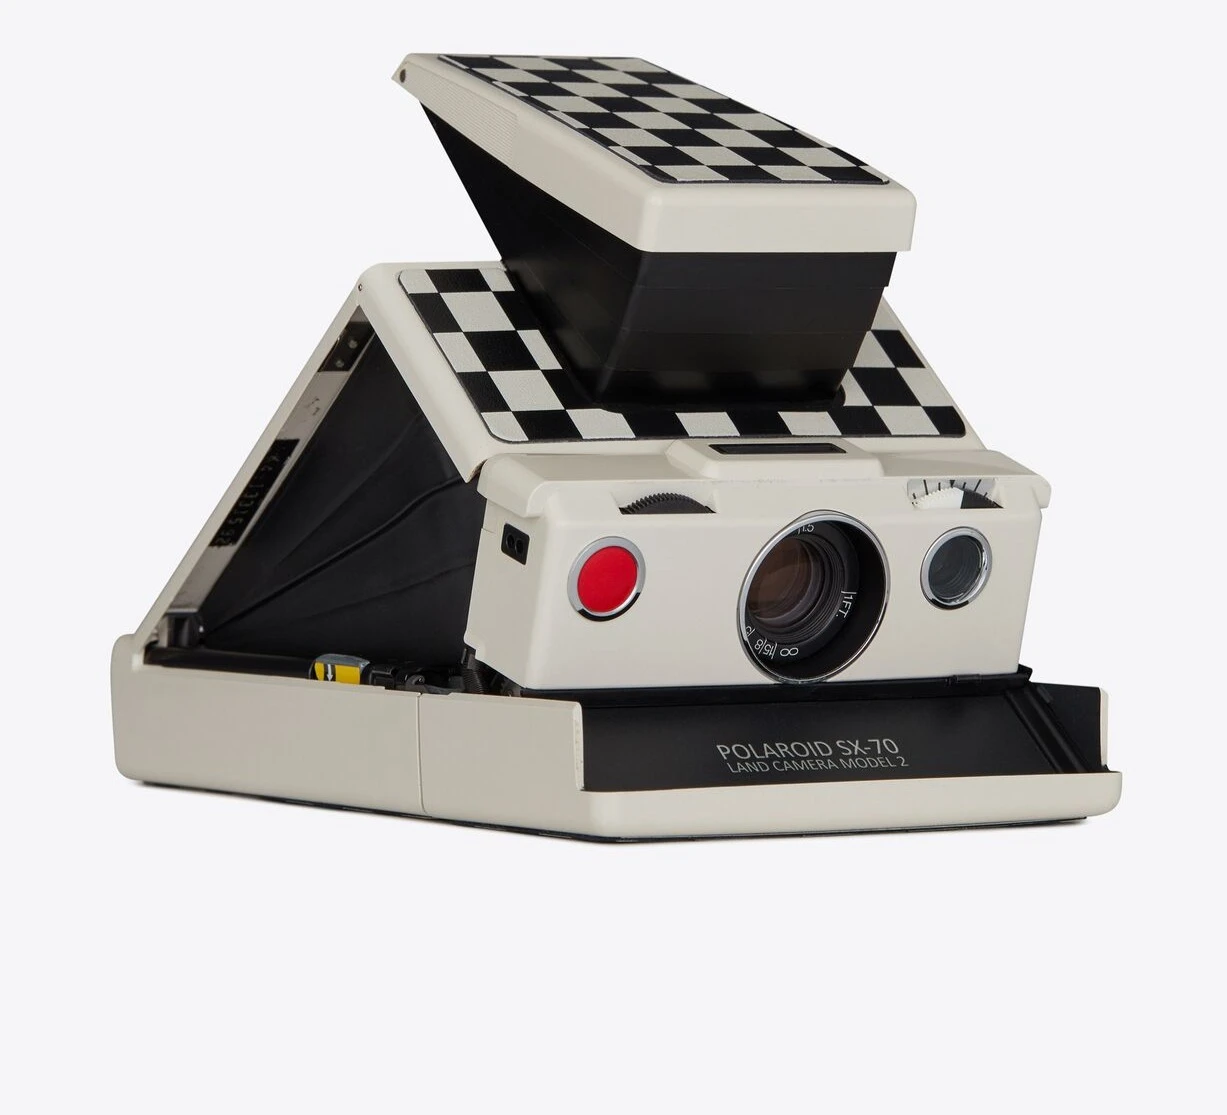 Saint Laurent x Polaroid steken de 'Polaroid SX-70' camera in een nieuw jasje